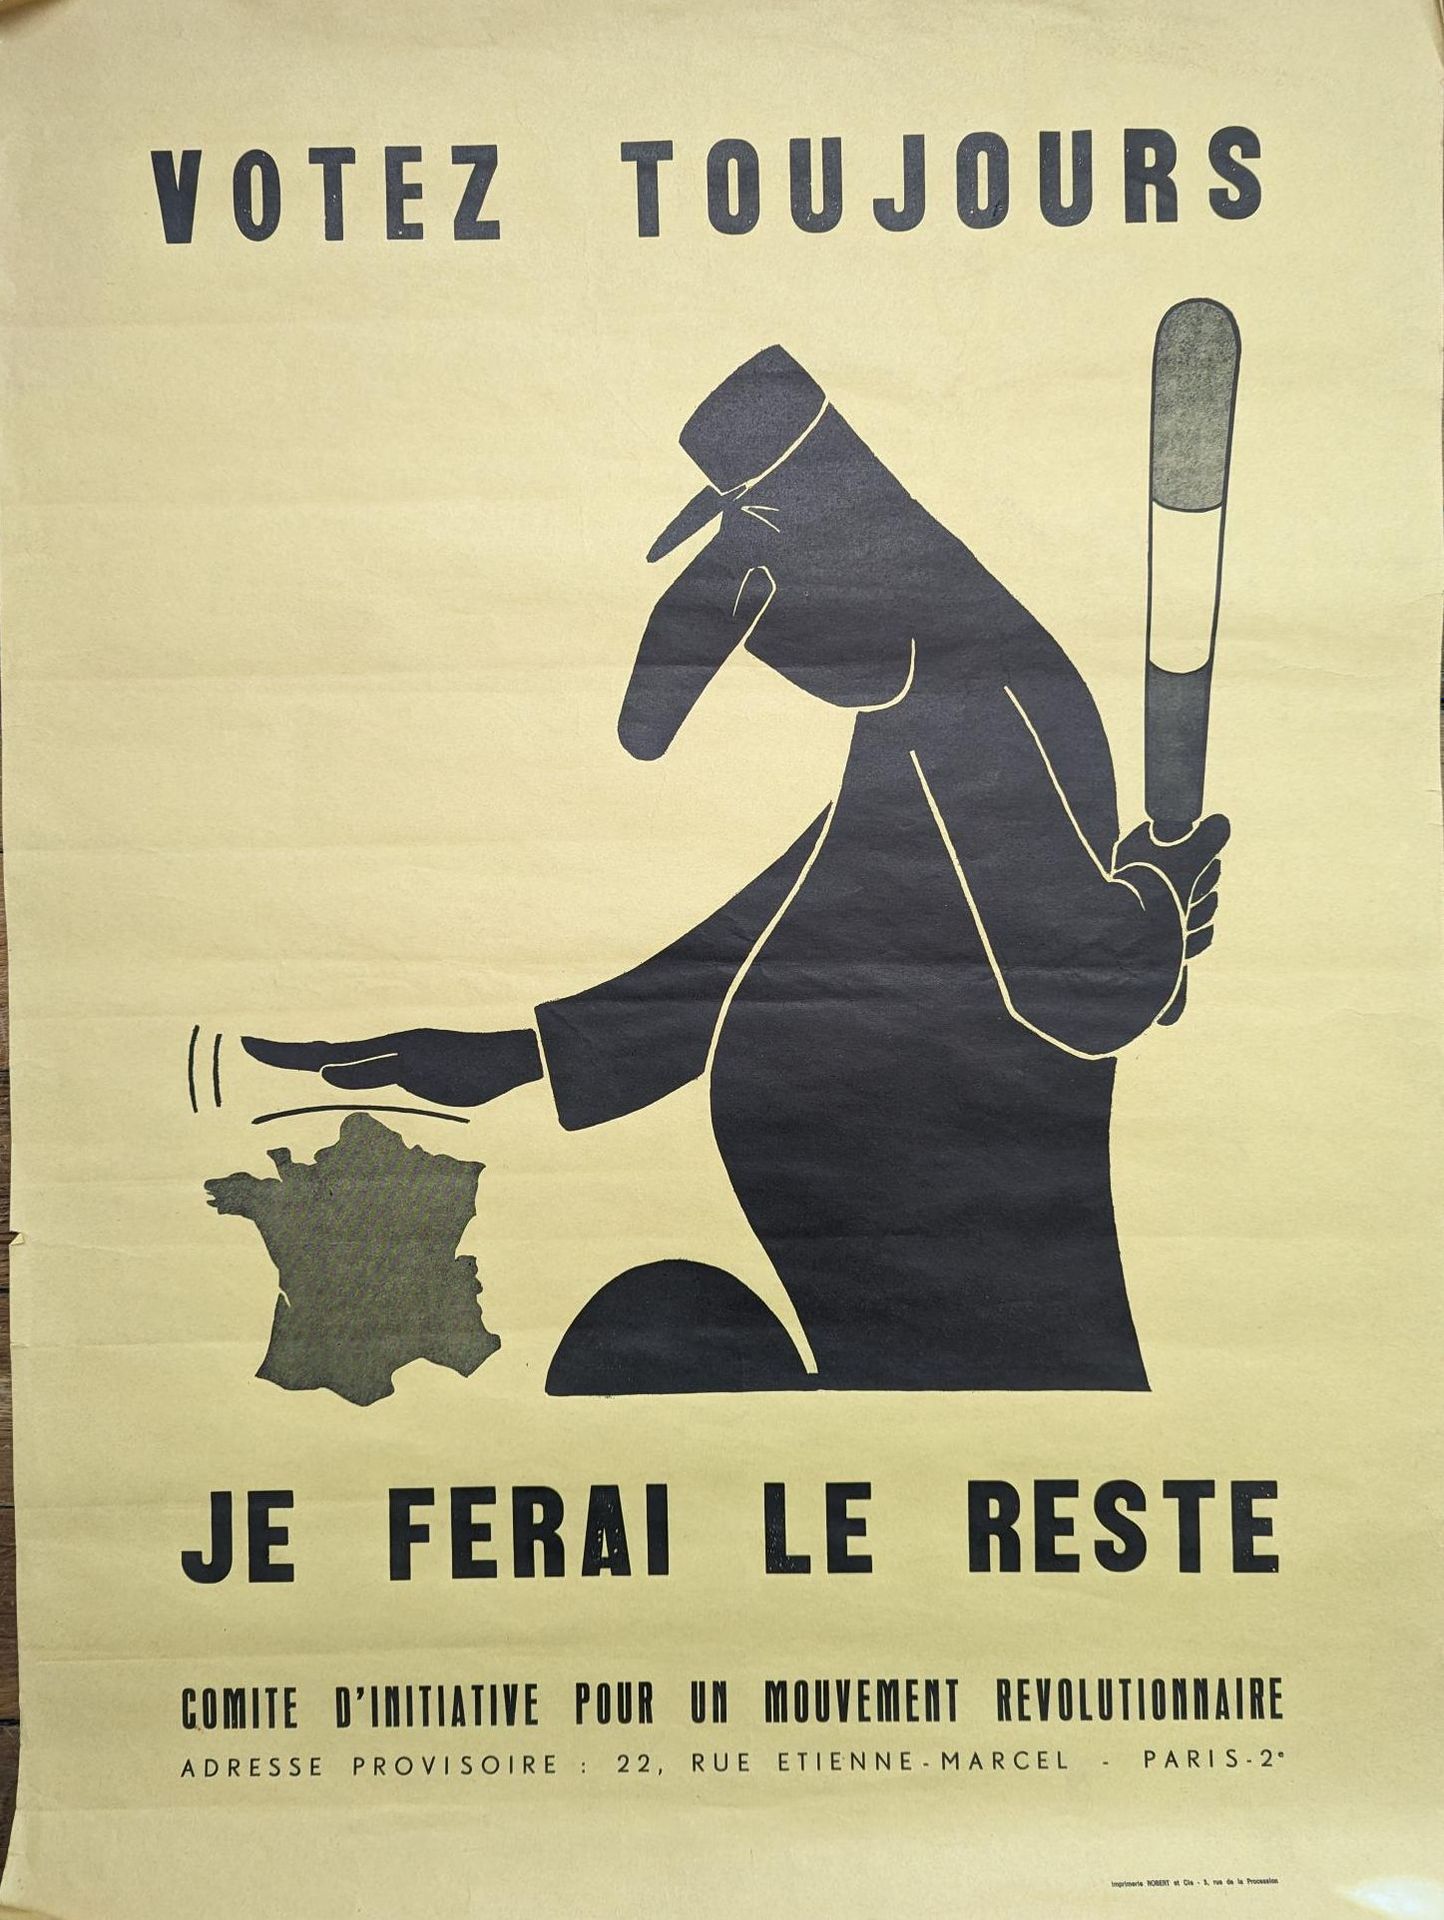 Null 1968年5月的海报
总是投票......其余的由我来做
显示戴高乐将军手持指挥棒的海报
由革命运动倡议委员会制作
75 x 56 cm